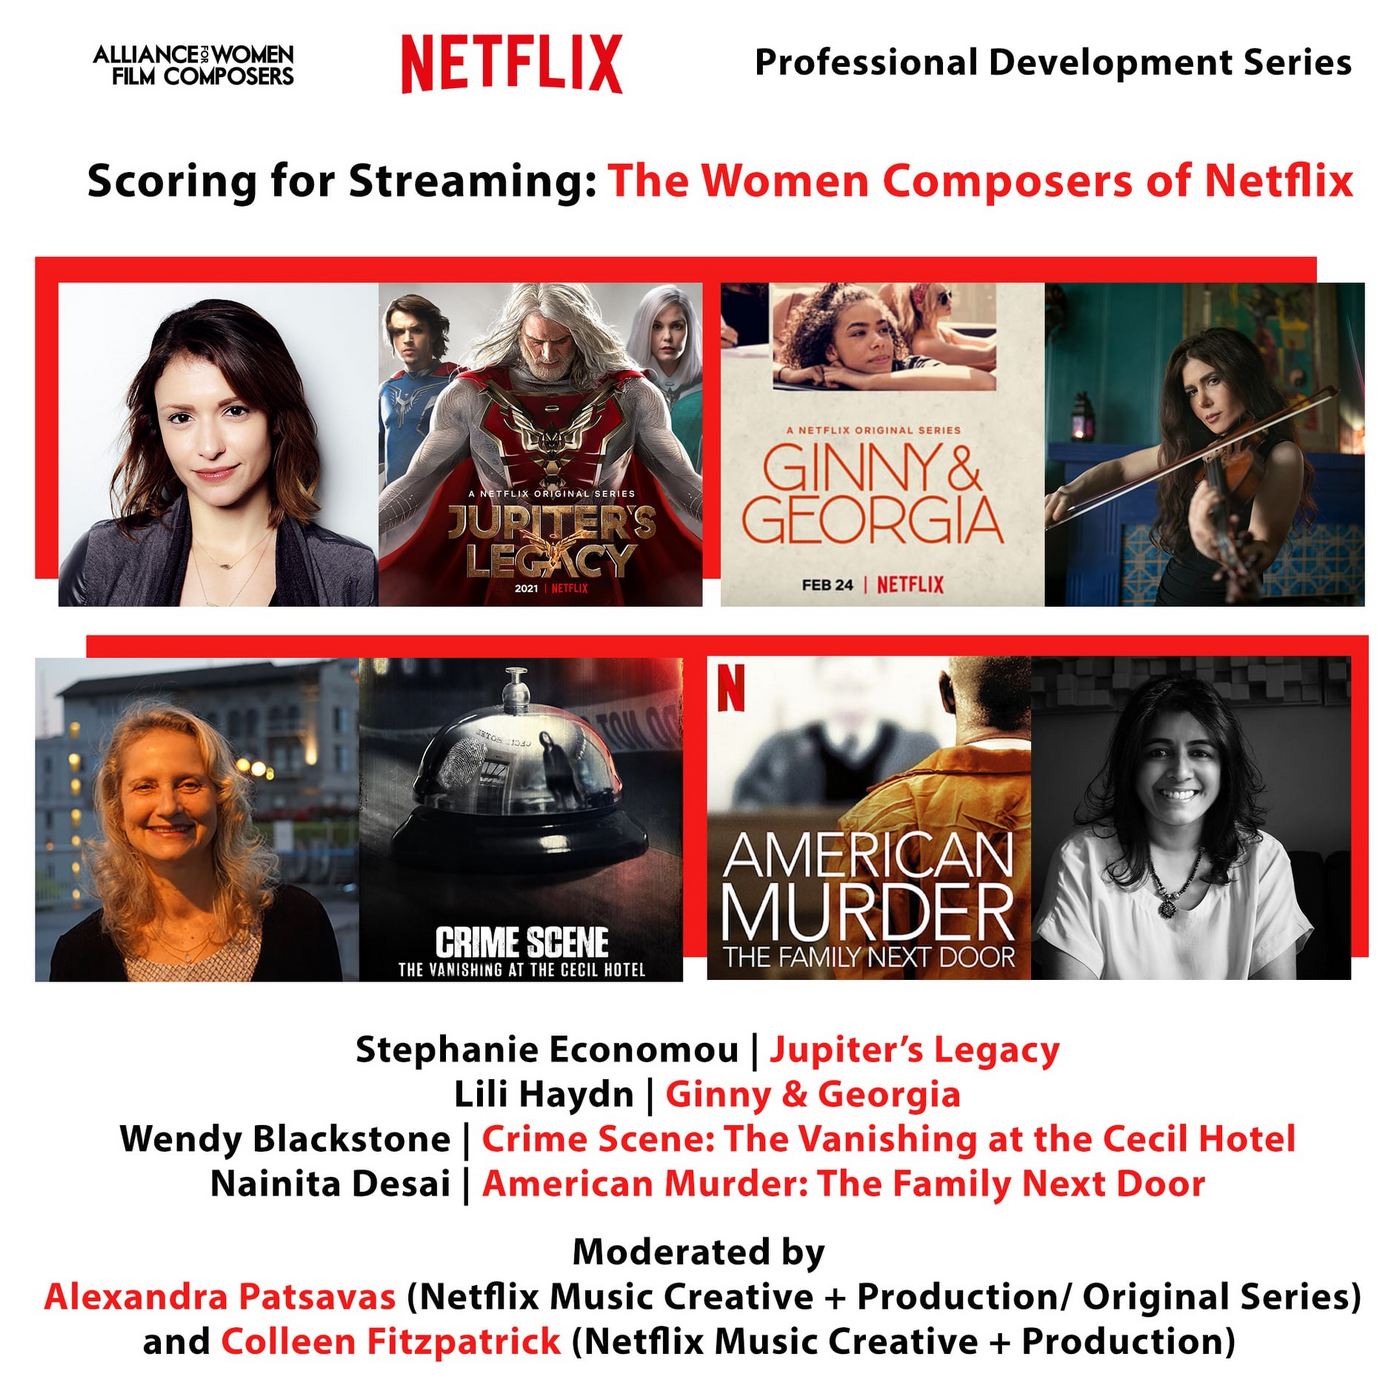 Netflix: todos os lançamentos de novembro de 2021 no streaming